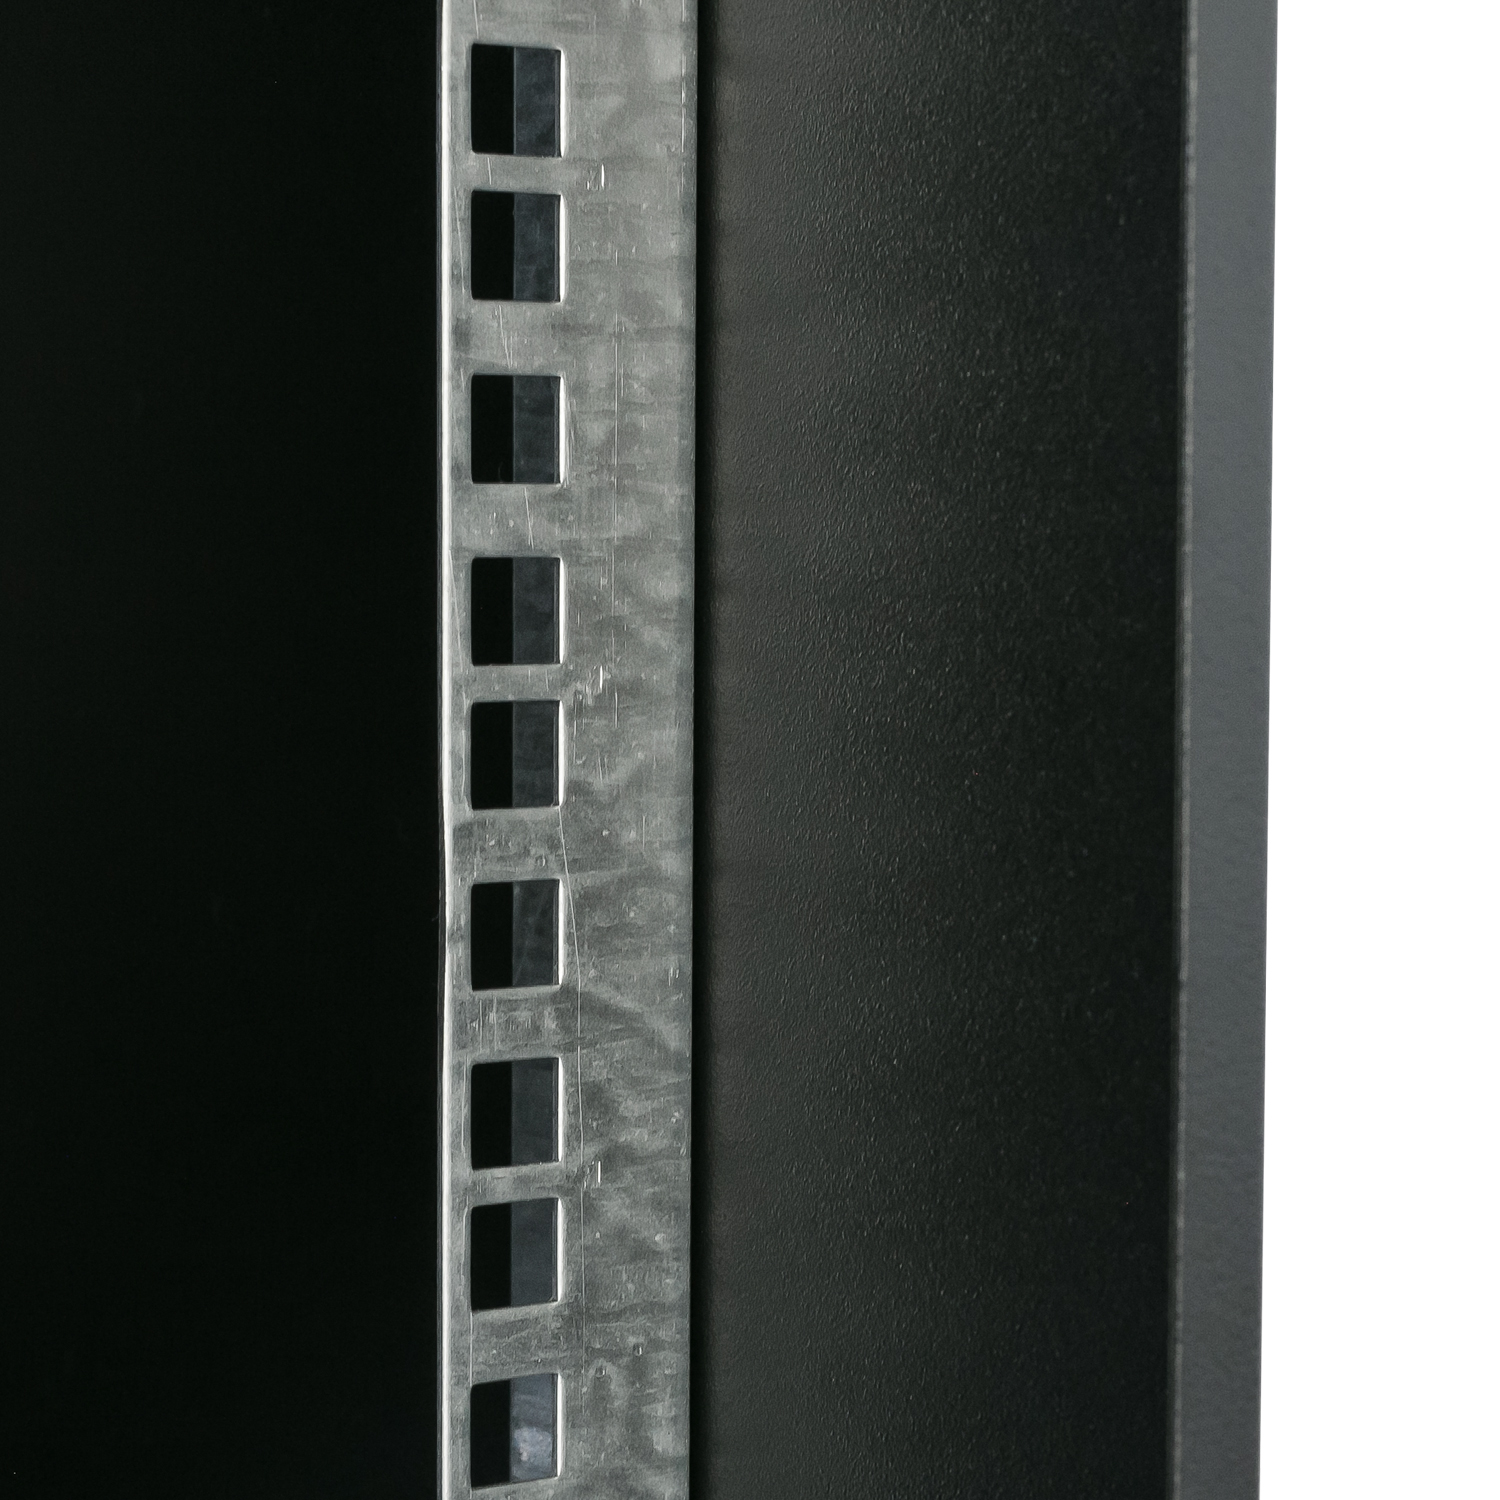 Unmontierter 19 Zoll Serverschrank von HMF mit 4 Höheneinheiten in Schwarz